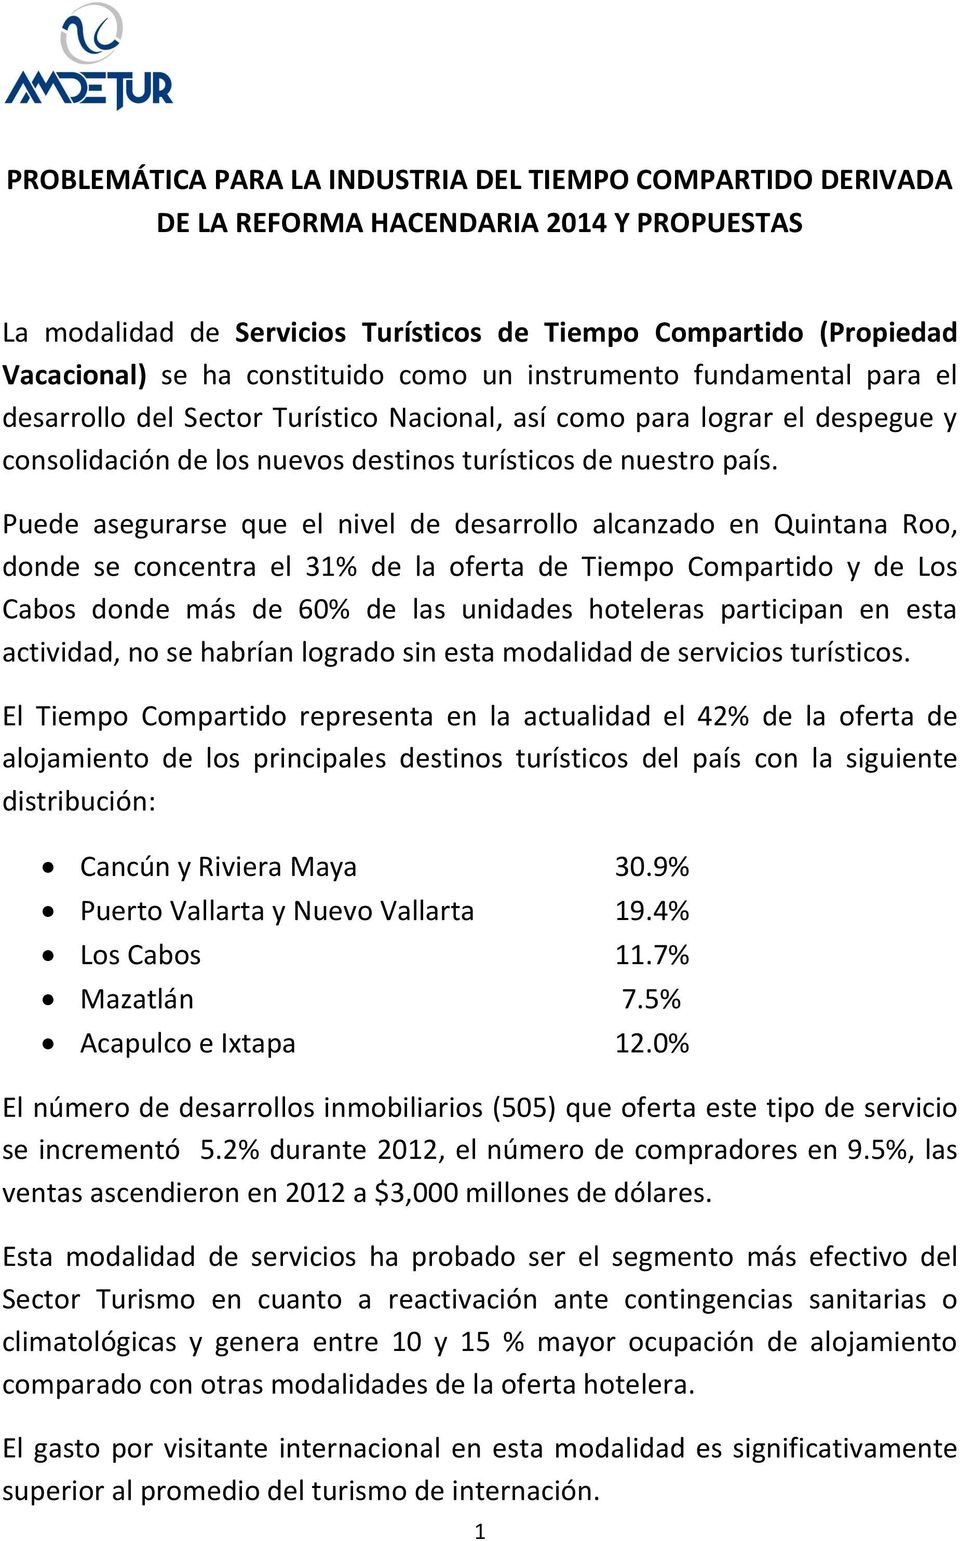 Puede asegurarse que el nivel de desarrollo alcanzado en Quintana Roo, donde se concentra el 31% de la oferta de Tiempo Compartido y de Los Cabos donde más de 60% de las unidades hoteleras participan